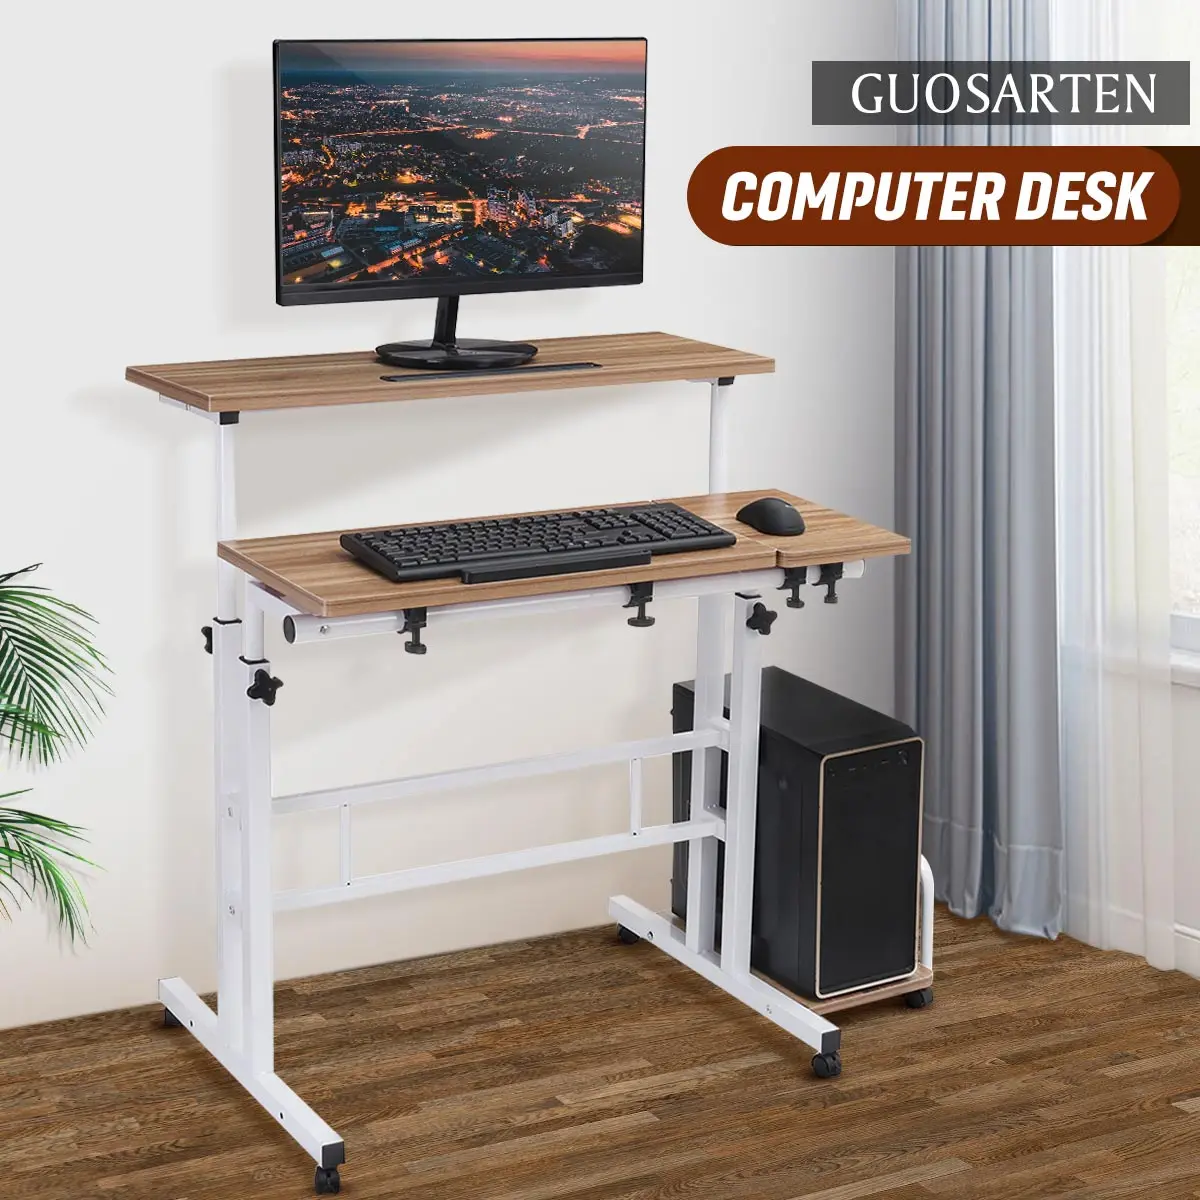 

Стол компьютерный двухуровневый с регулируемой высотой, прикроватный столик для ноутбука, для дома и офиса